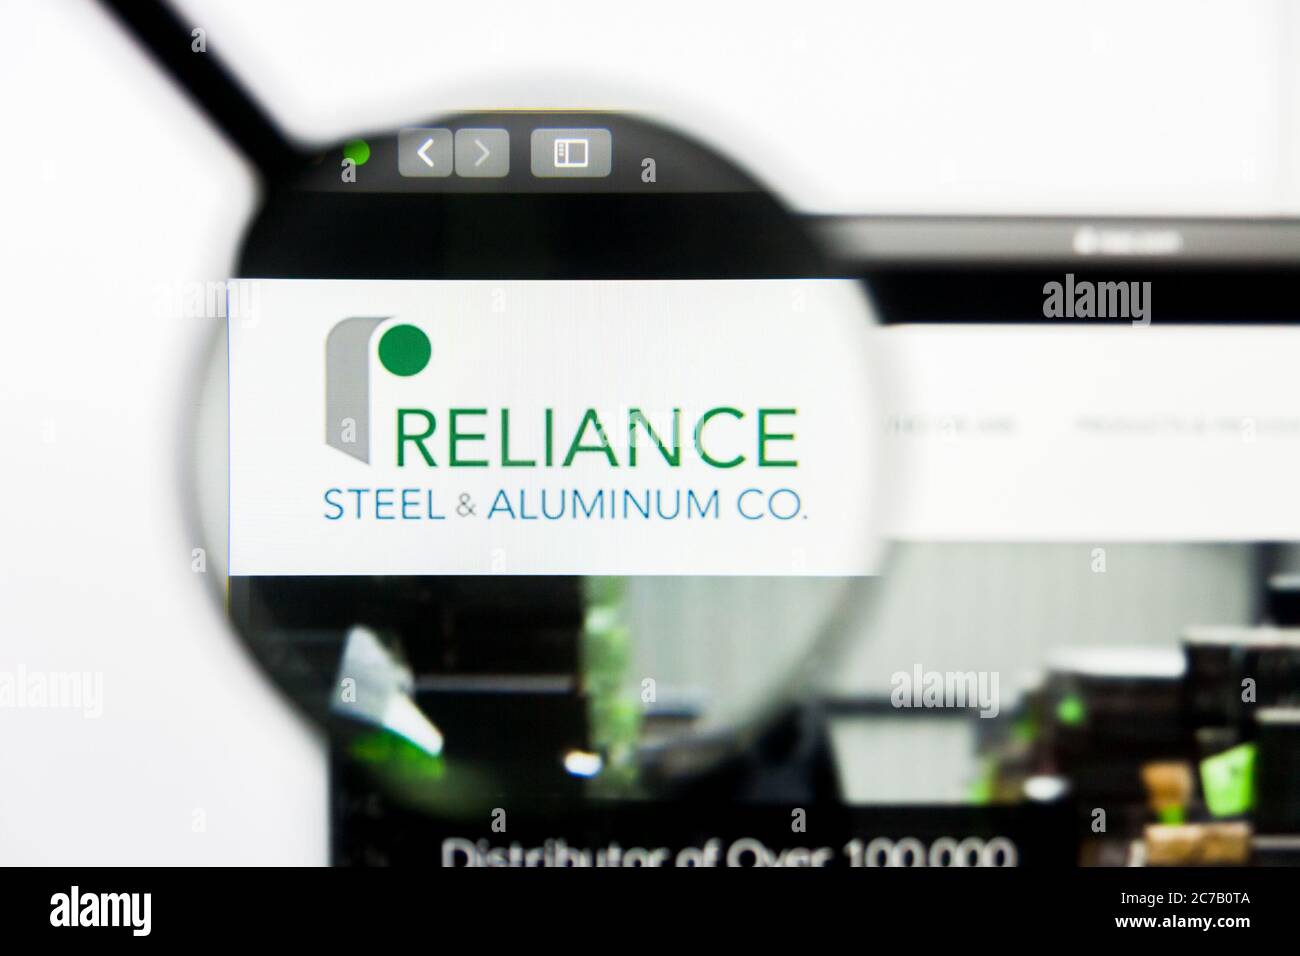 Los Angeles, Kalifornien, USA - 23. März 2019: Illustrative Editorial der Website von Reliance Steel. Reliance Steel Logo auf dem Display sichtbar Stockfoto